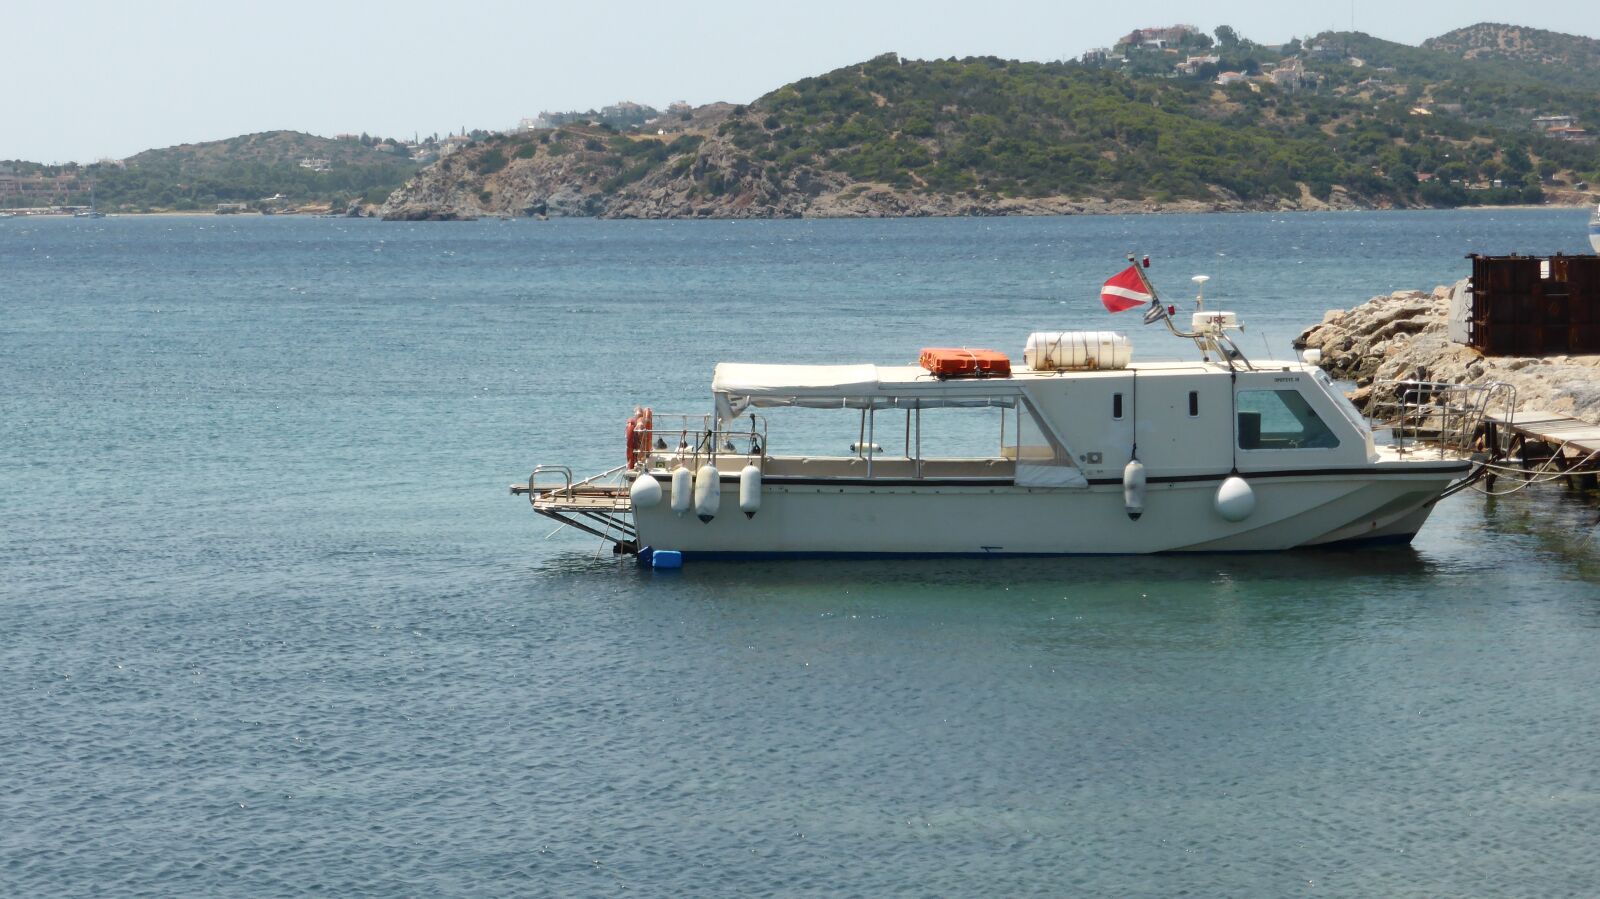 Panasonic Lumix DMC-ZS30 (Lumix DMC-TZ40) sample photo. Aegean sea, coast, boat photography